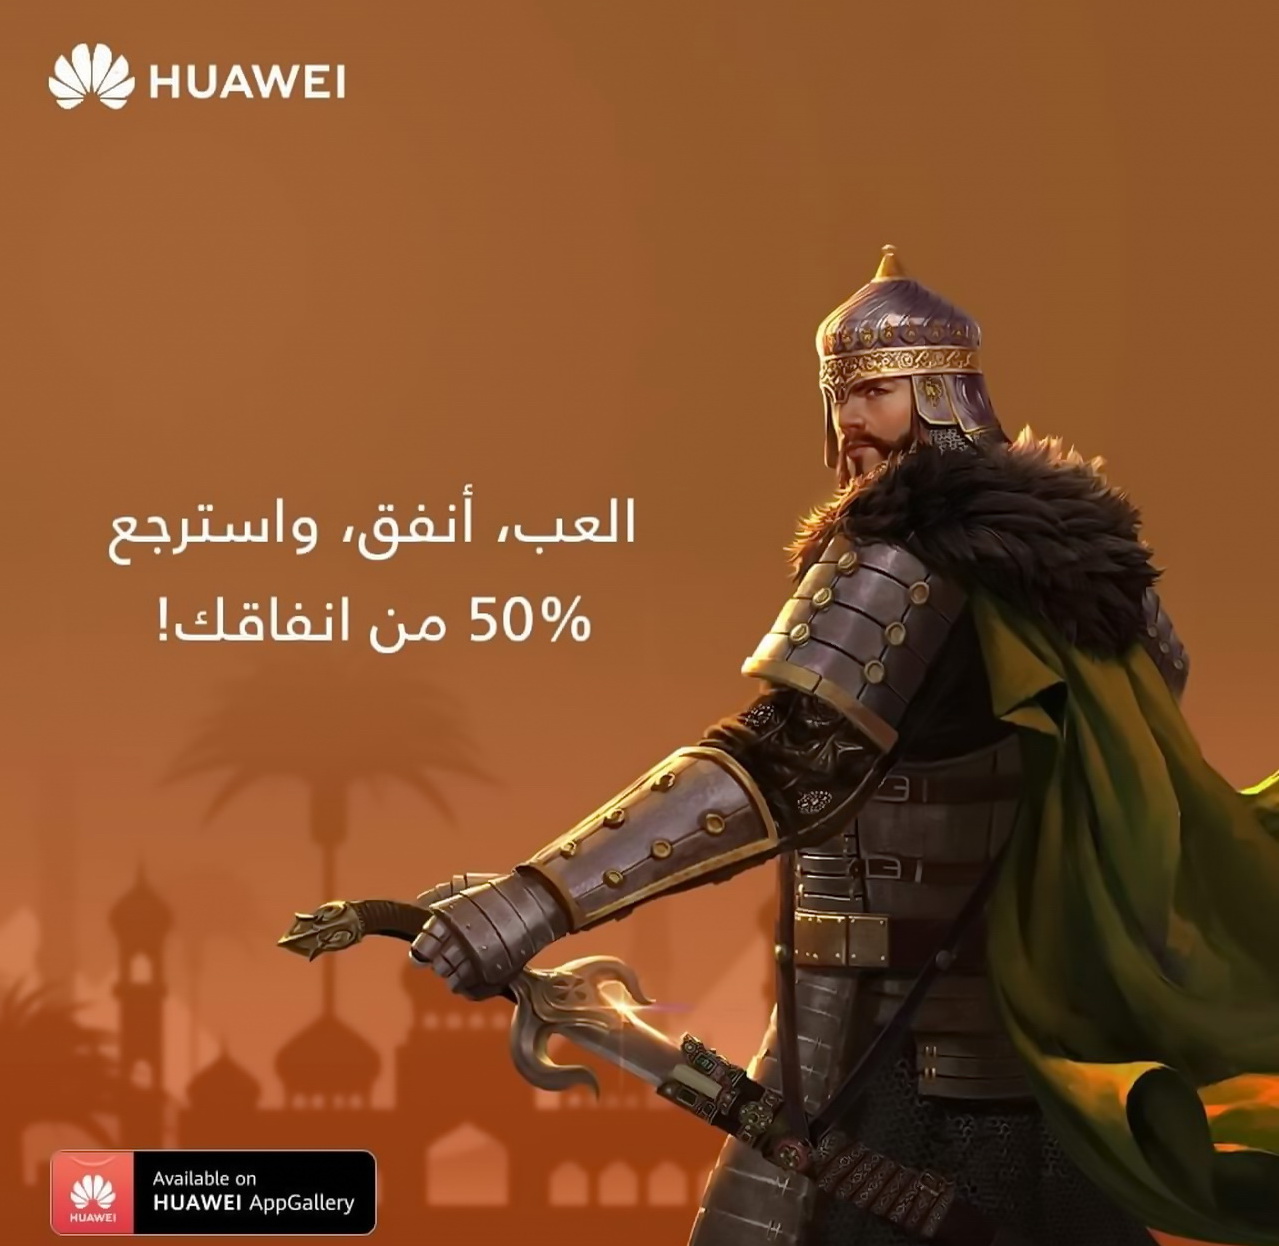 revenge of sultans hack download